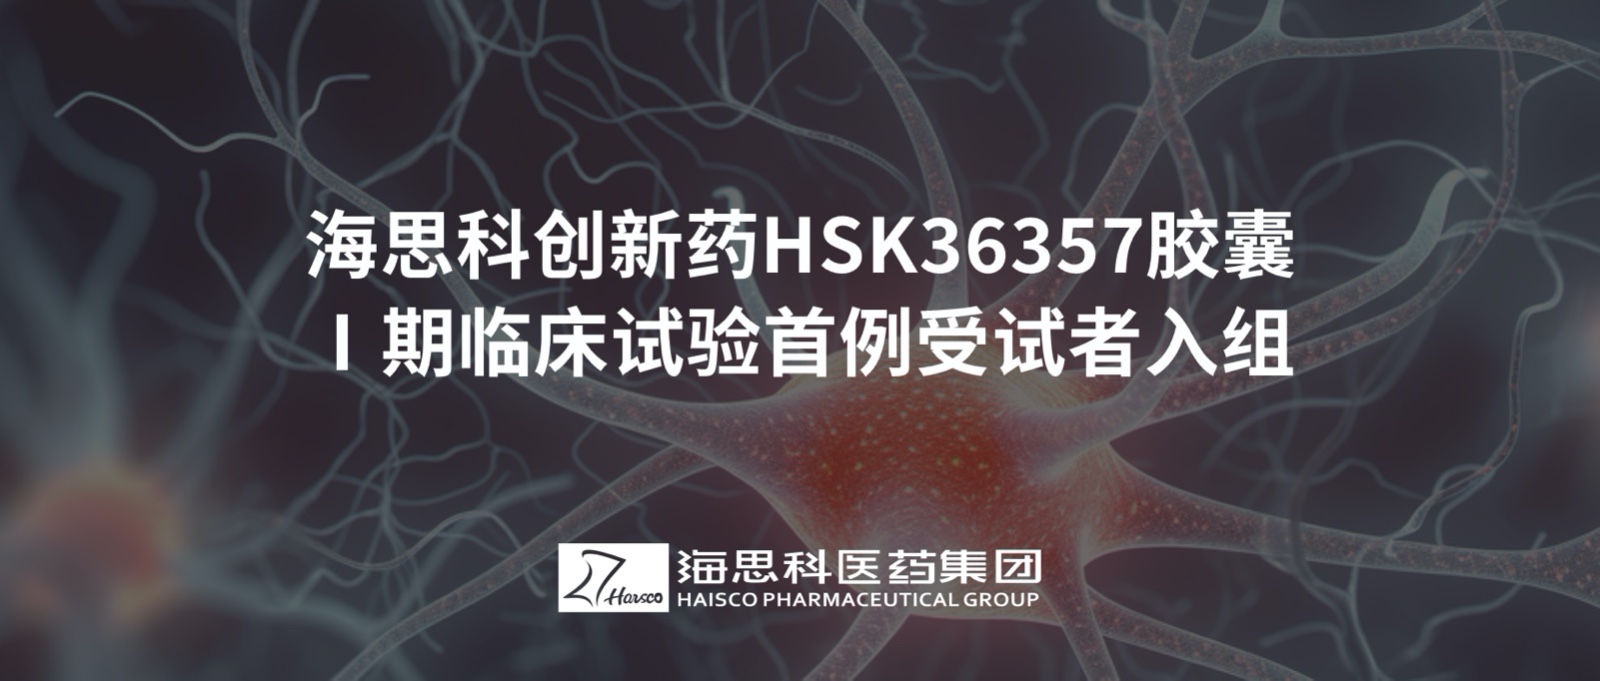 必赢网址bwi437创新药HSK36357胶囊Ⅰ期临床试验首例受试者入组